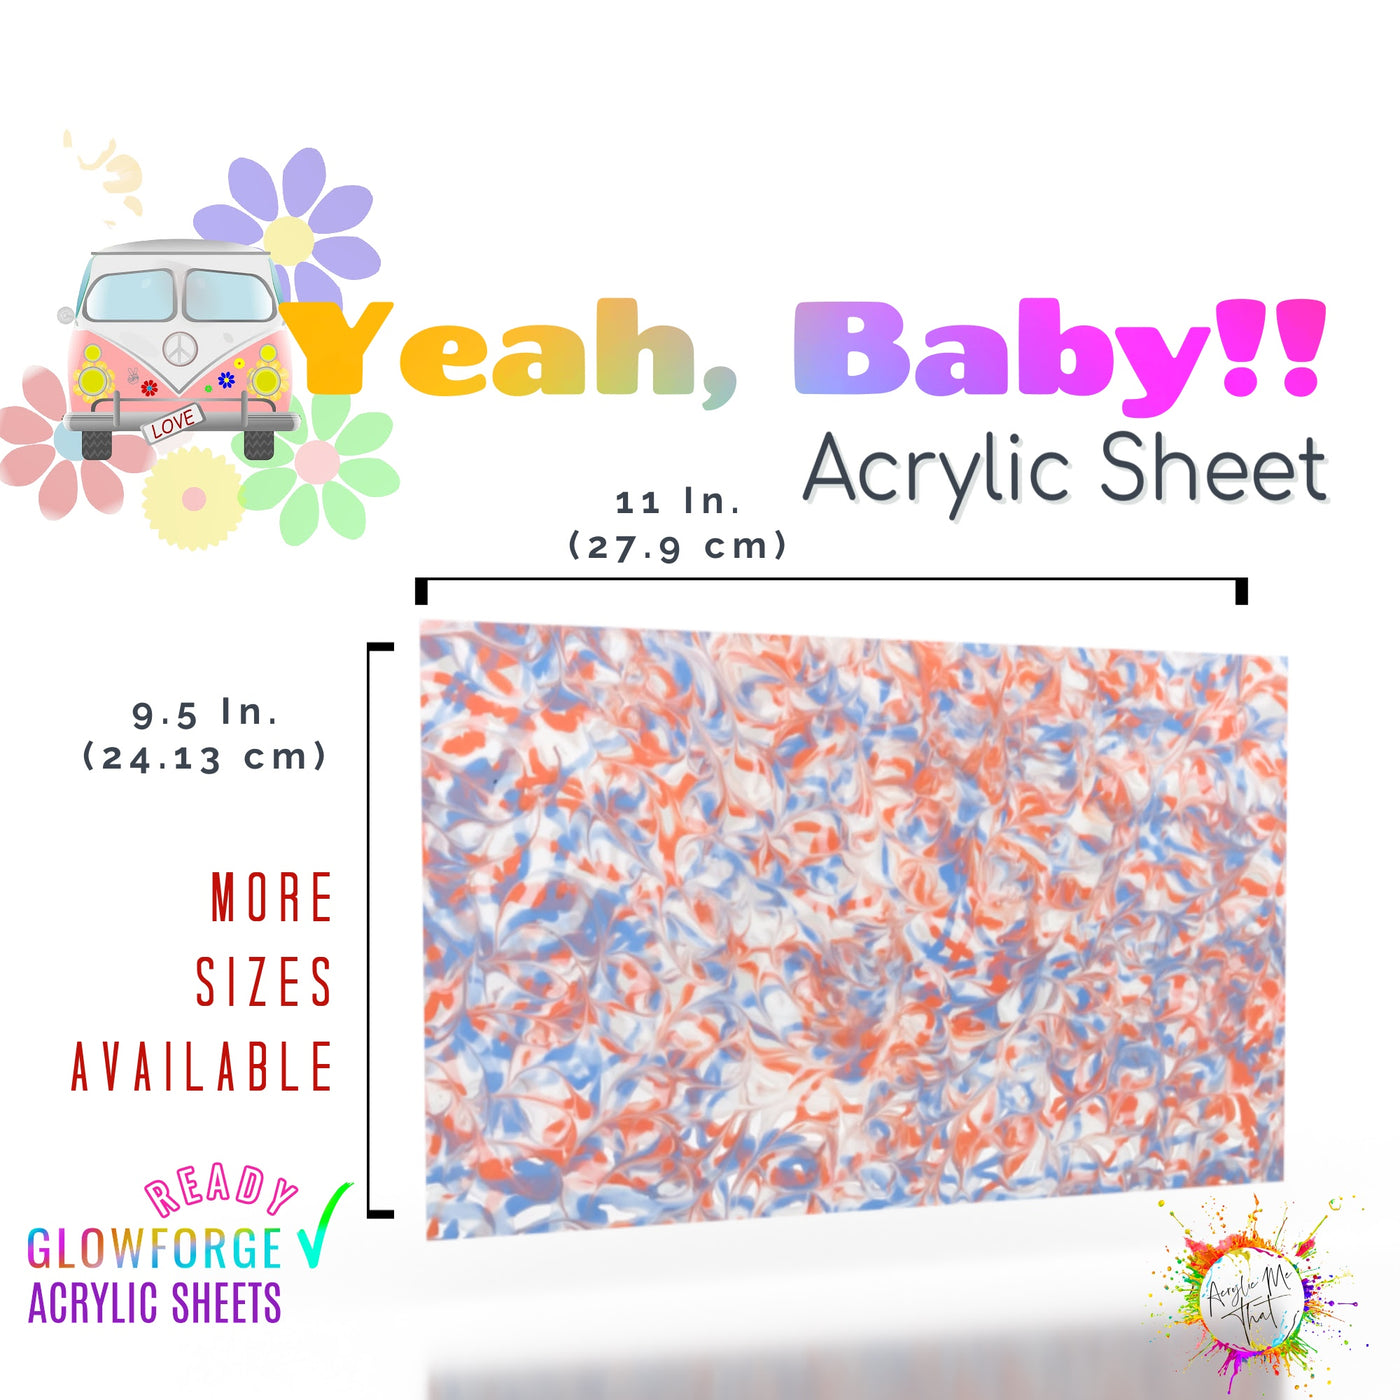 Yeah, Baby!! Acrylic Sheet